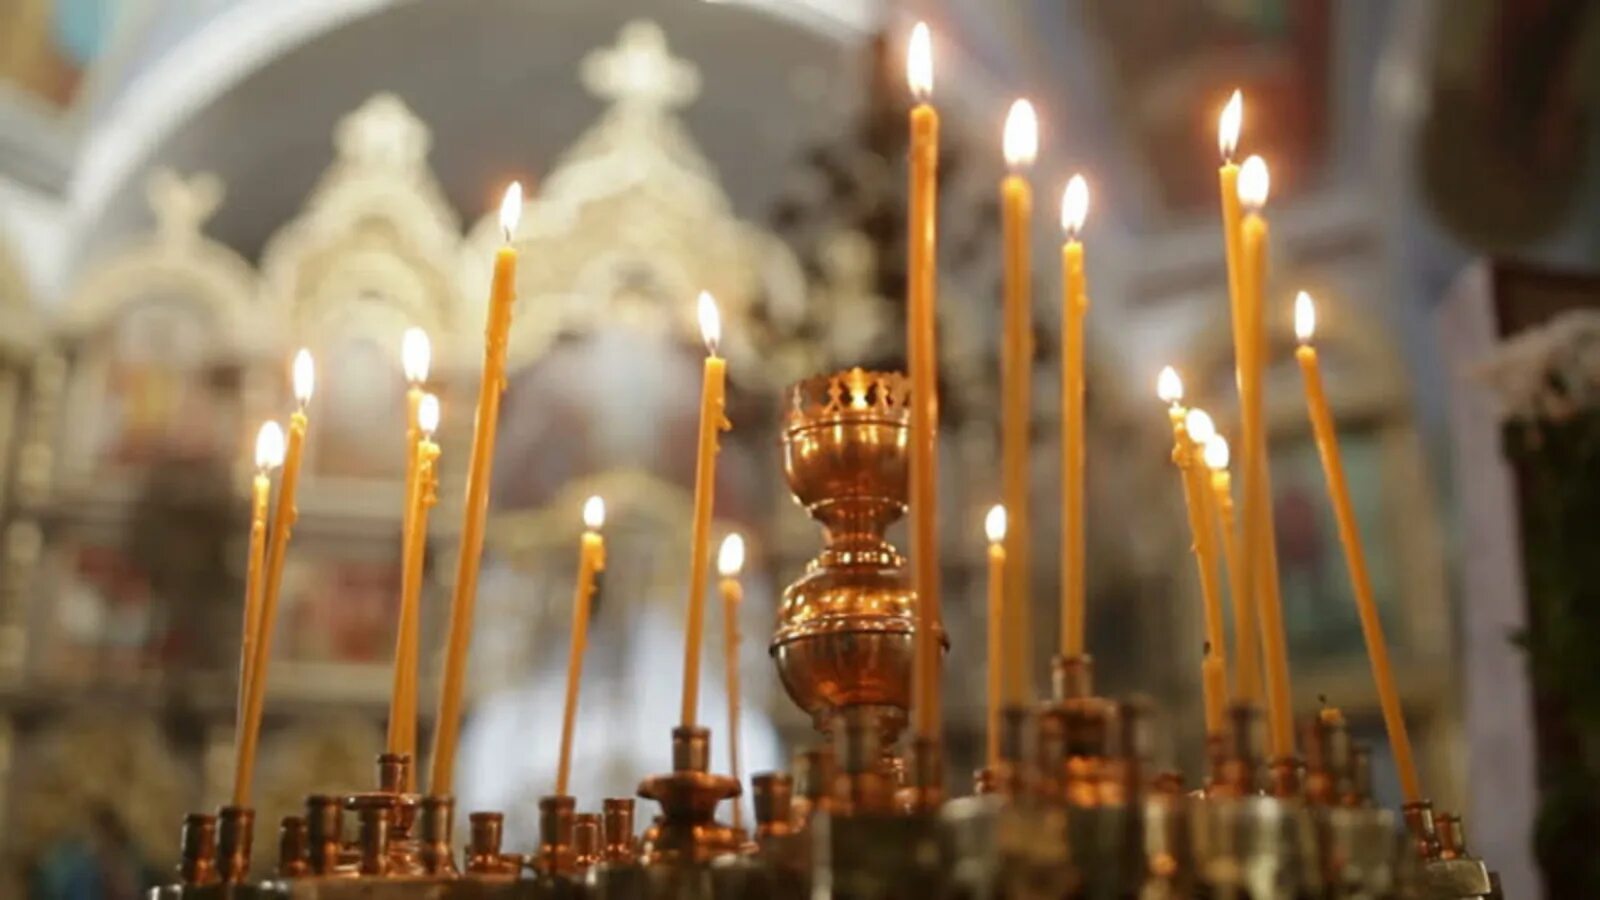 В церкви горят свечи. Свечи в храме. Горящие свечи в церкви. Свечи в храме красивые. Свечи горят в церкви.